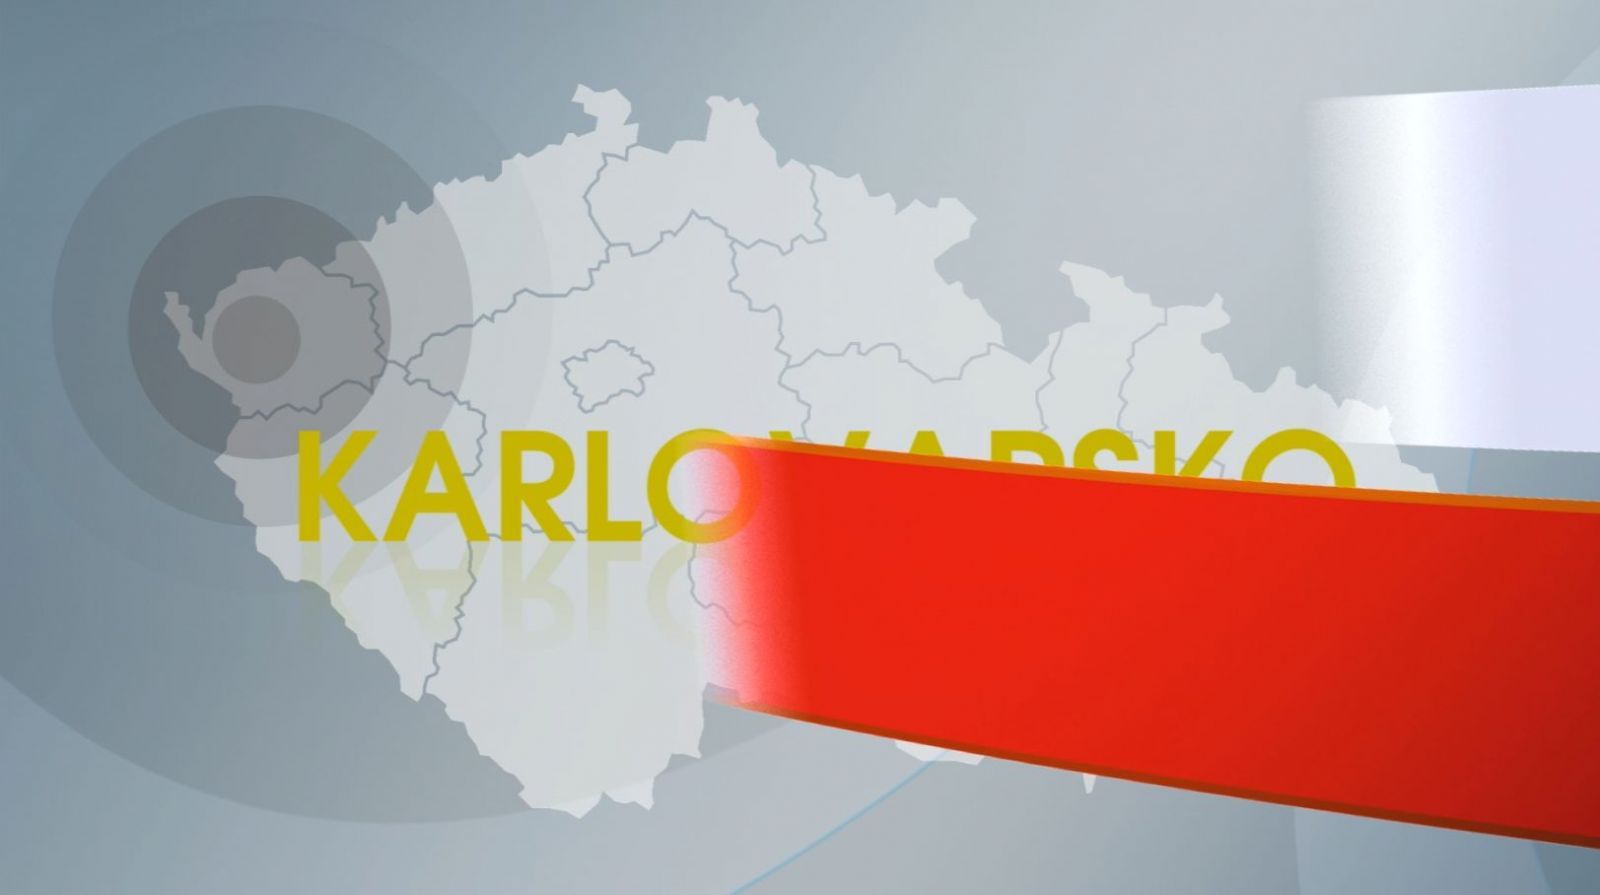 Region: Karlovarský kraj pokračuje v přípravě stavby a rekonstrukce keramické školy